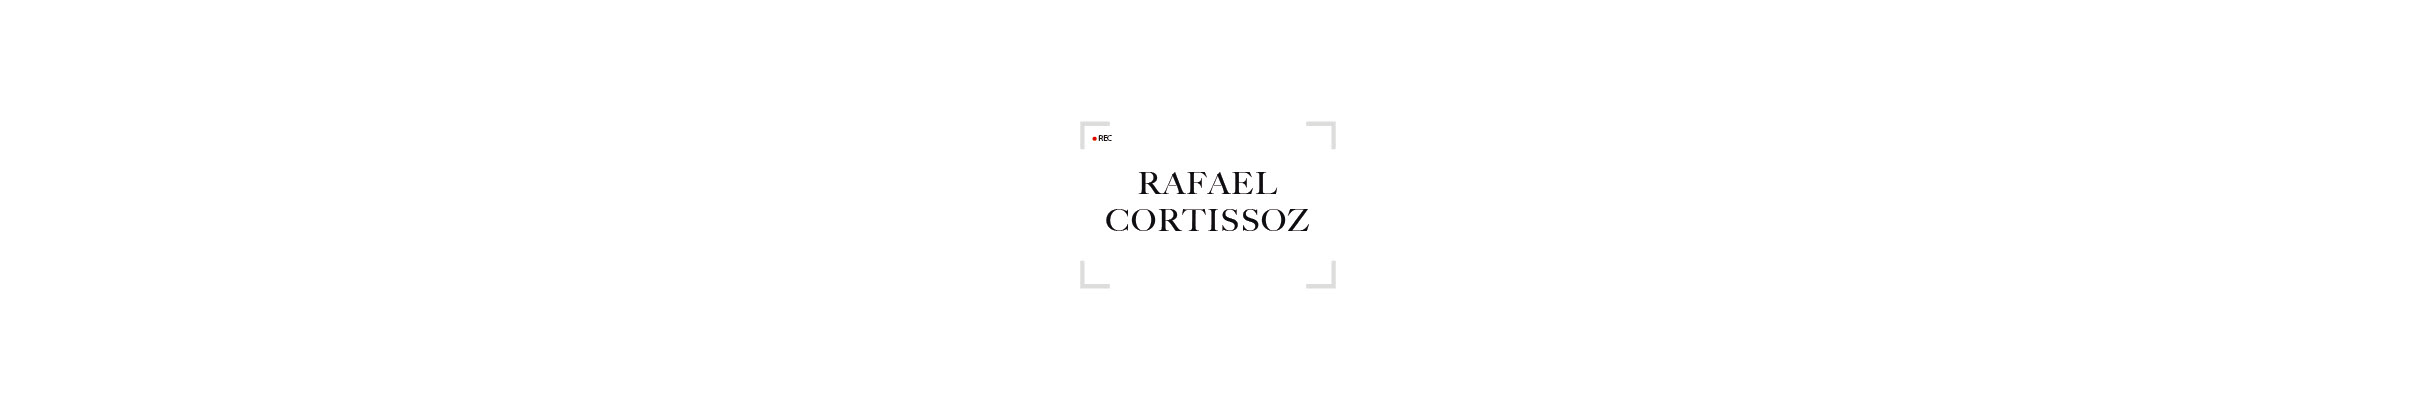 RAFAEL CORTISSOZ profil başlığı